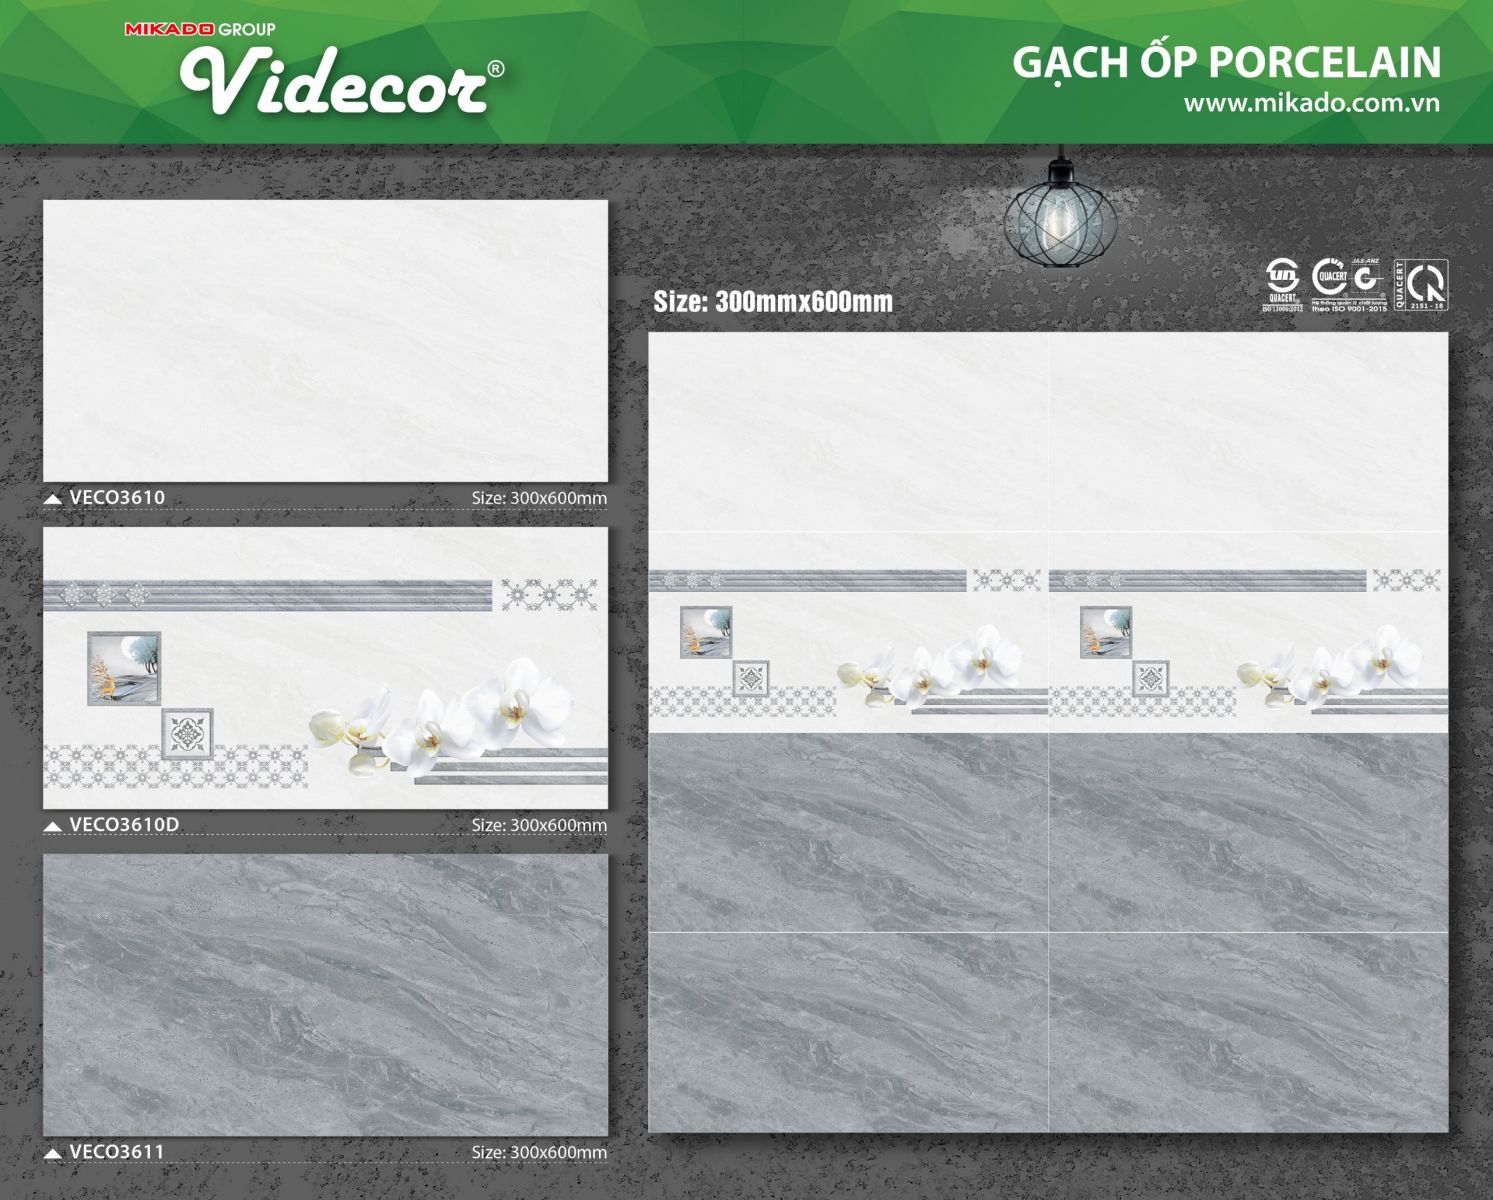 Gạch 300x600 Mikado Videcor ECO3610-VECO3610D-VECO3611 giá rẻ